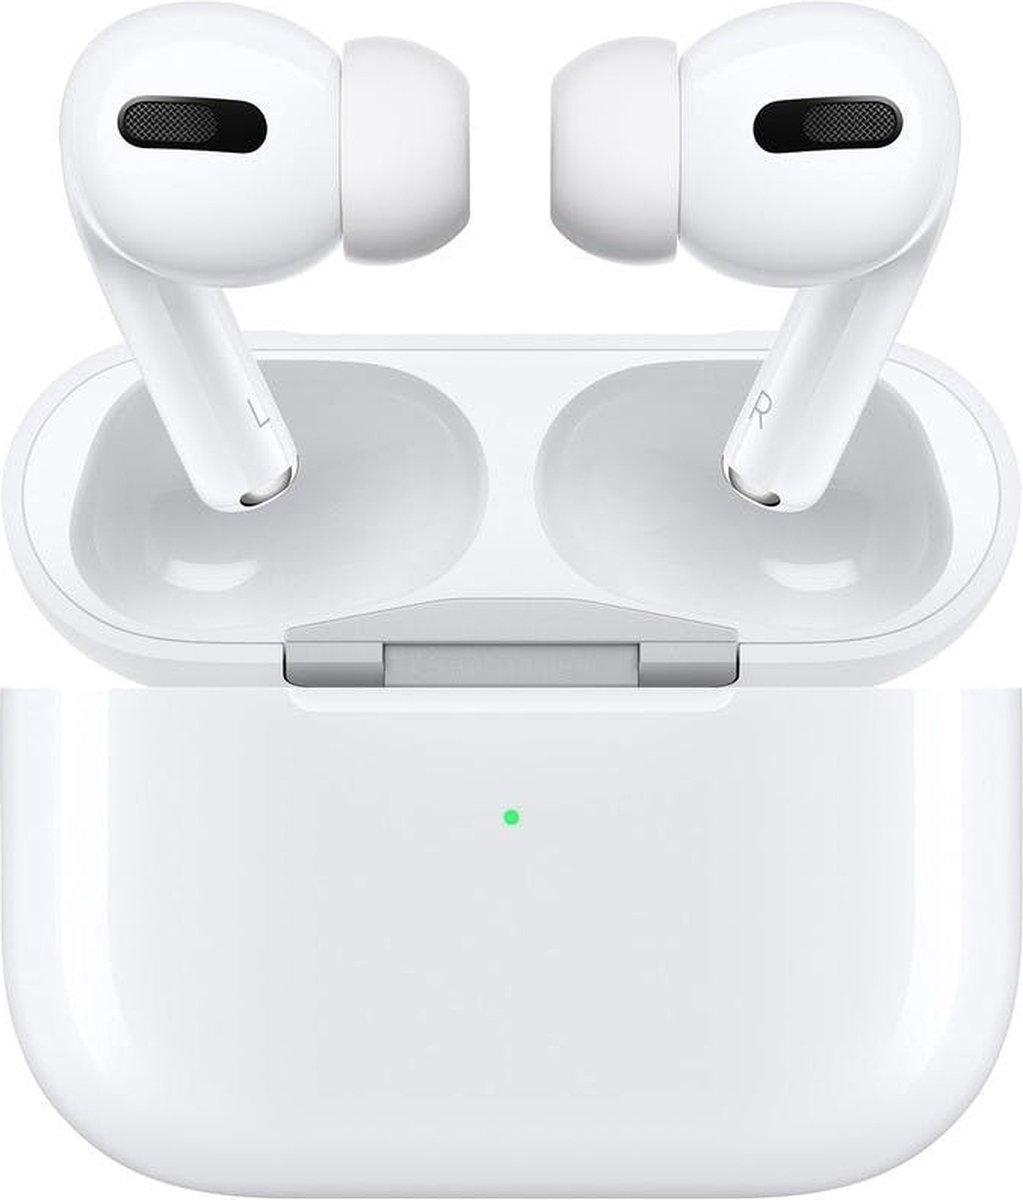 Vervorming reflecteren merk op Apple AirPods Pro met reguliere opbergcase | bol.com